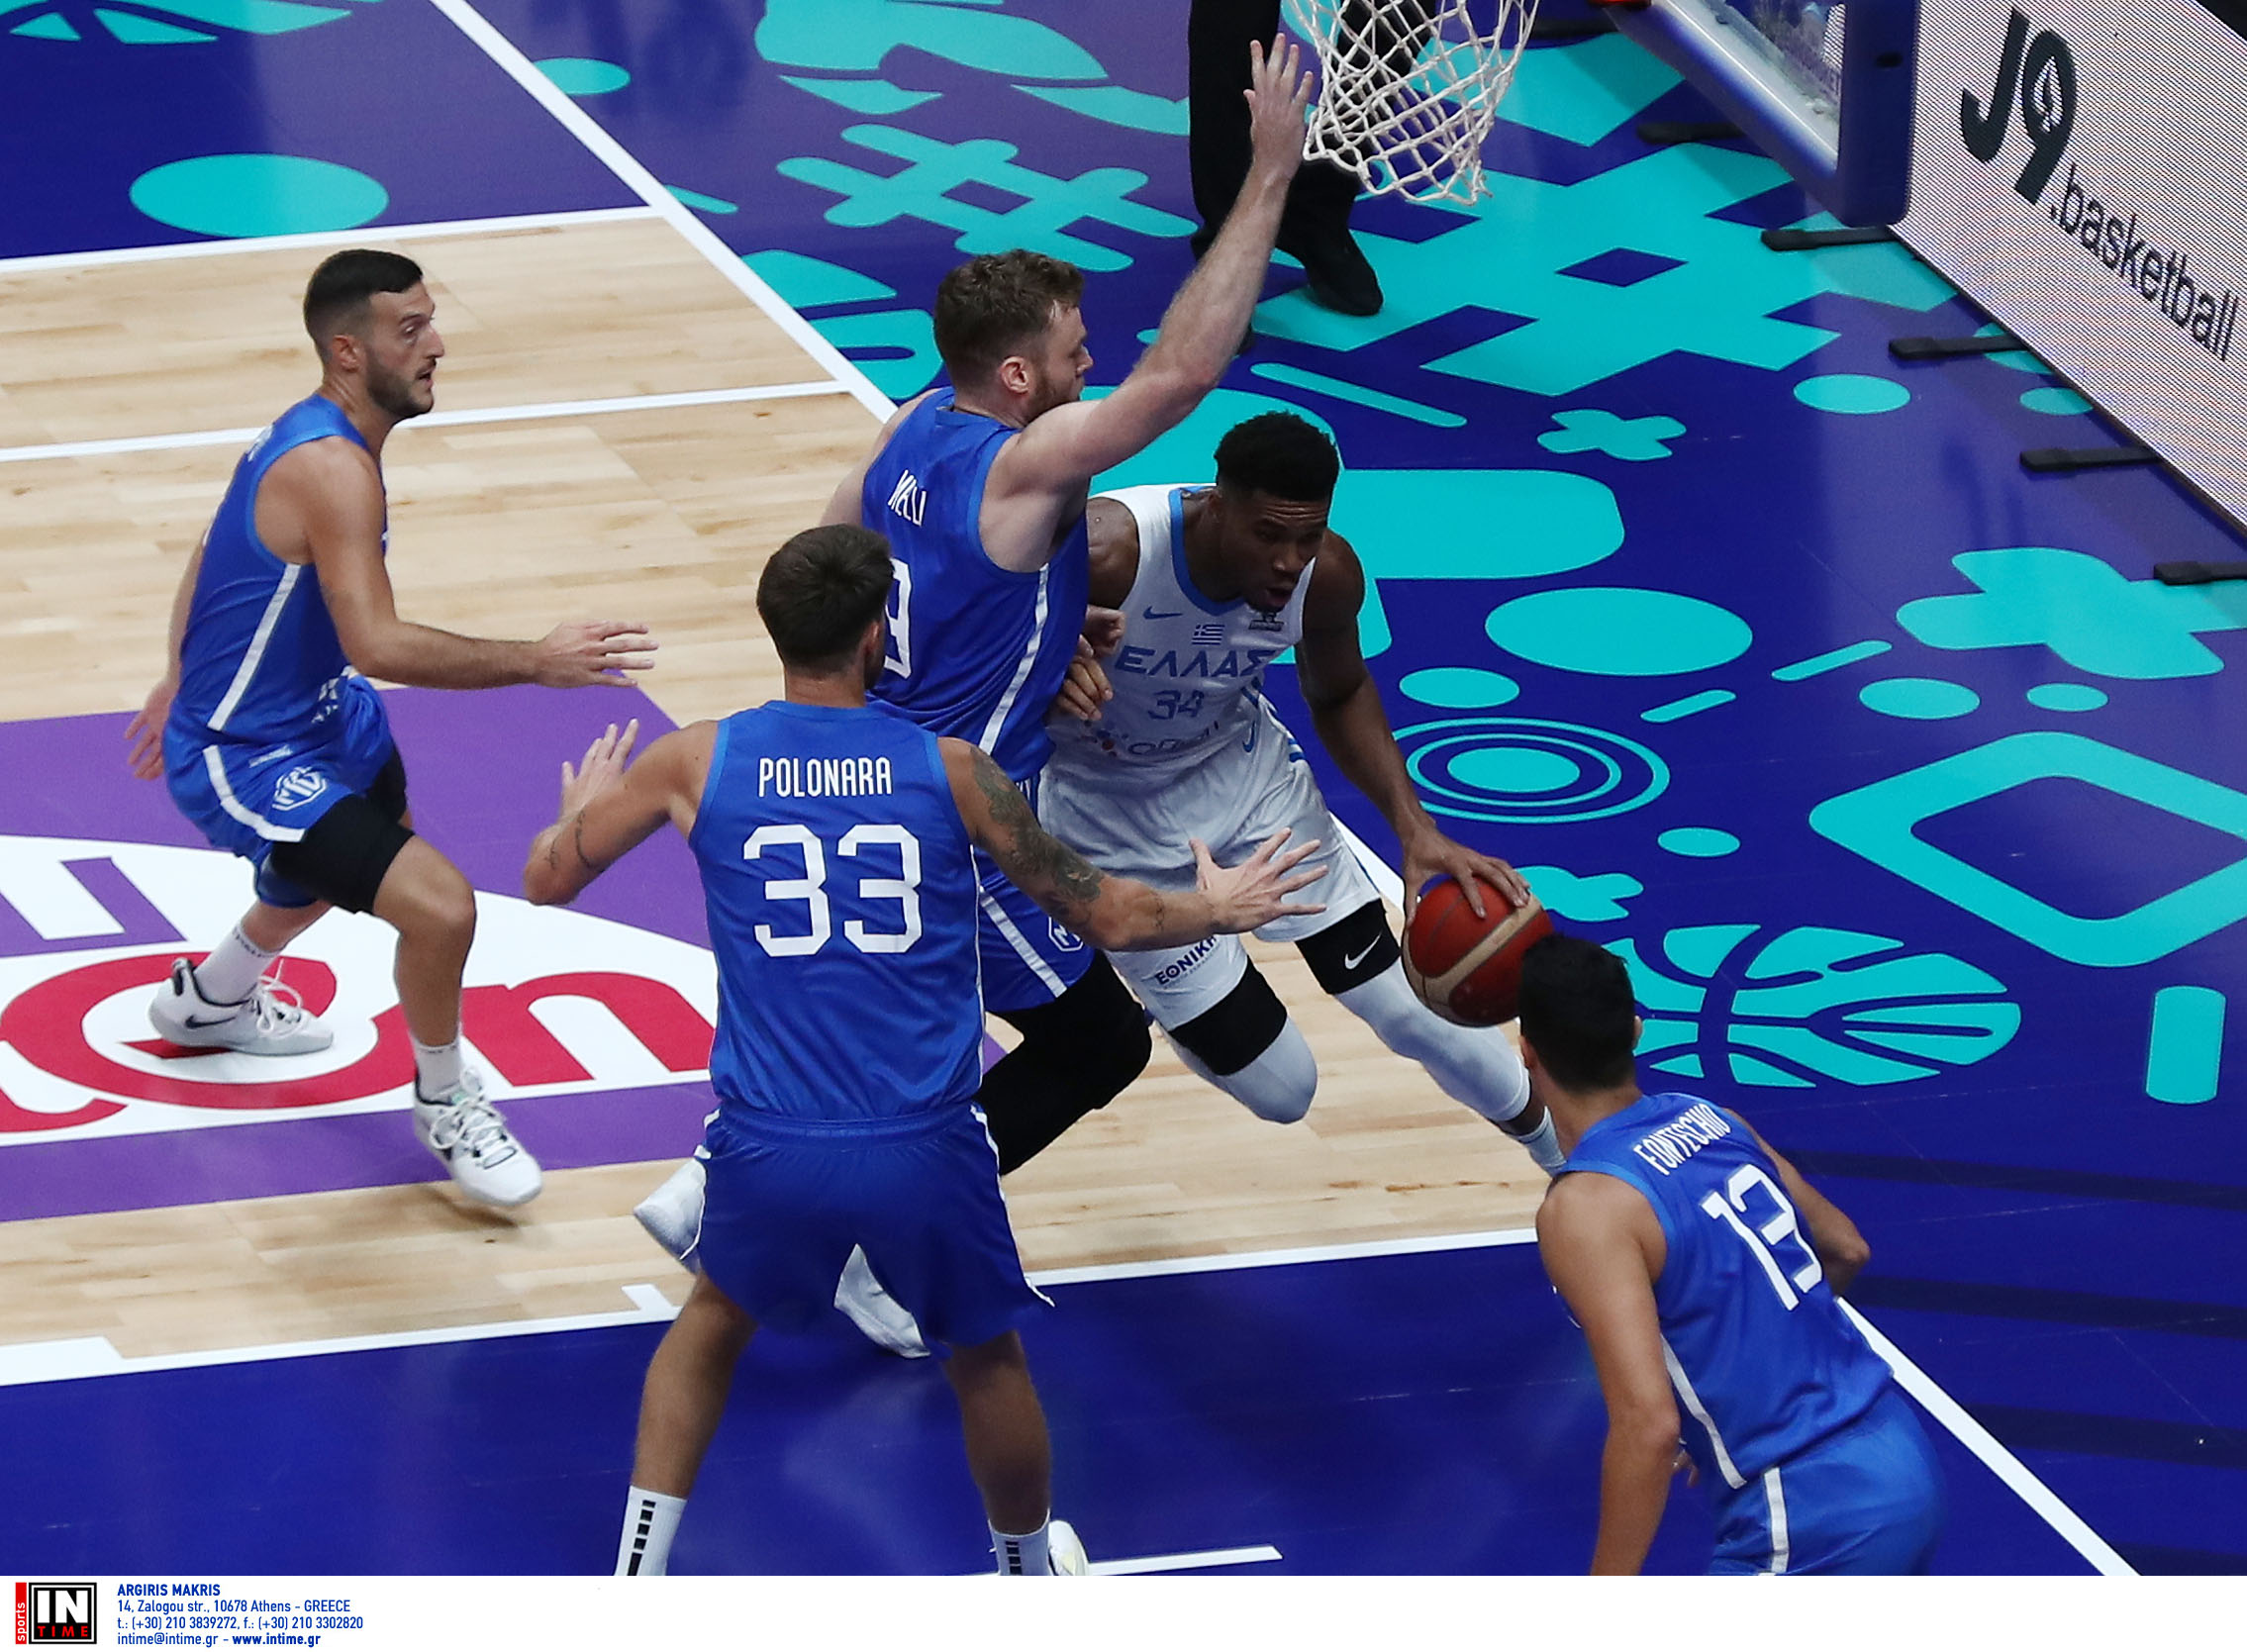 Ελλάδα – Ιταλία LIVE η δεύτερη αναμέτρηση της γαλανόλευκης στο Eurobasket 2022